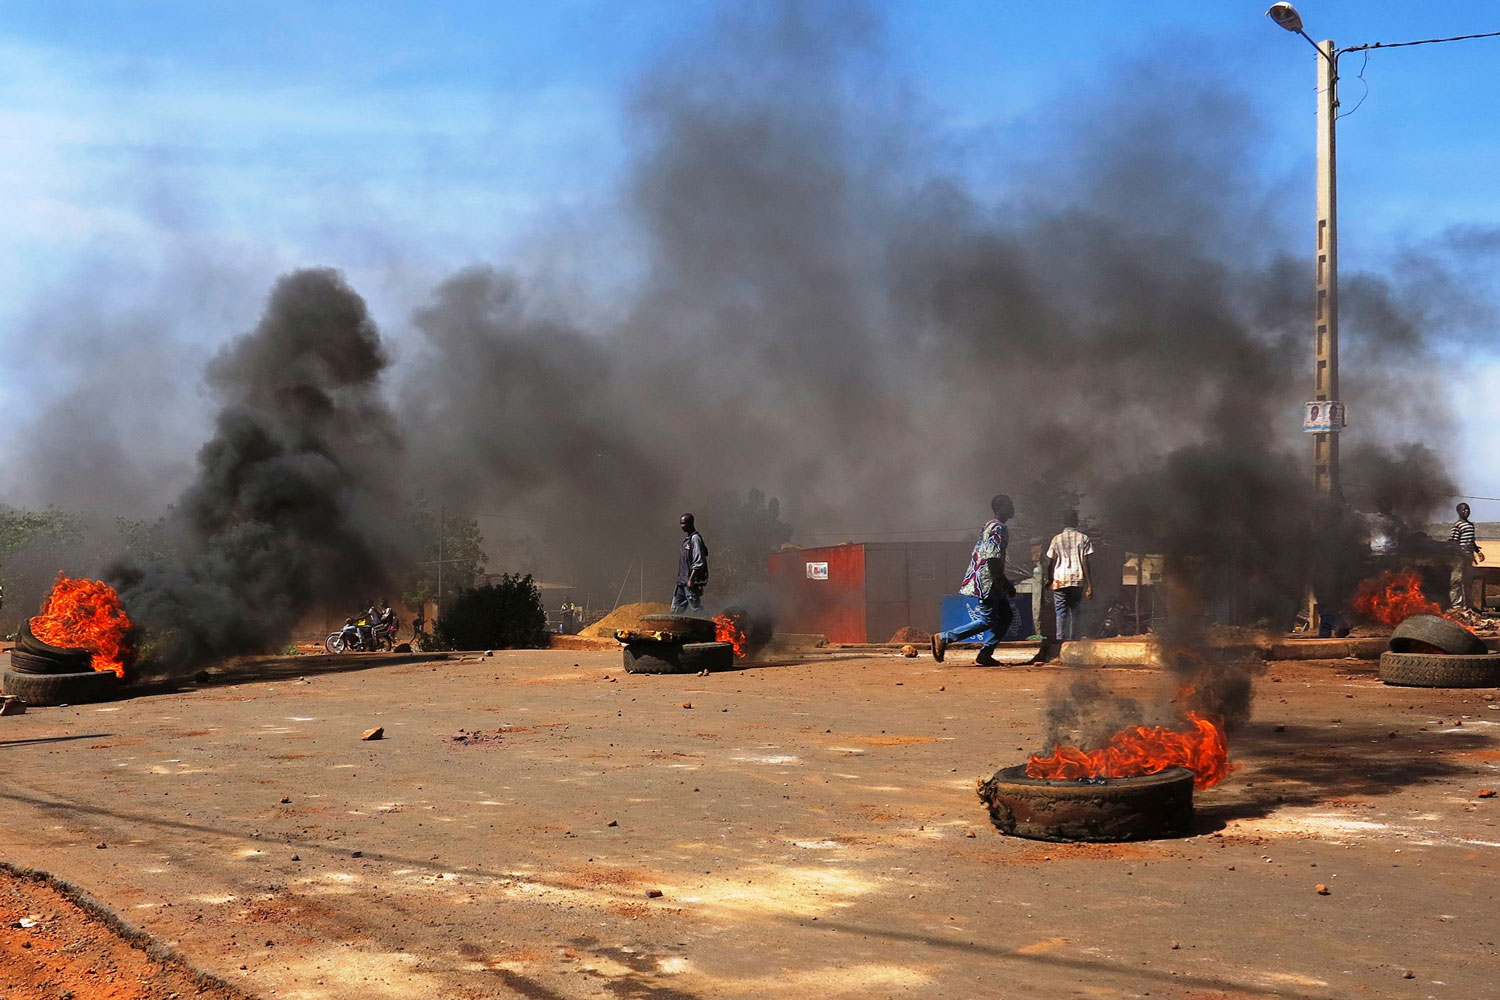 La detención del ex jefe de la Junta Militar de Mali provoca oleadas de protestas en el país.